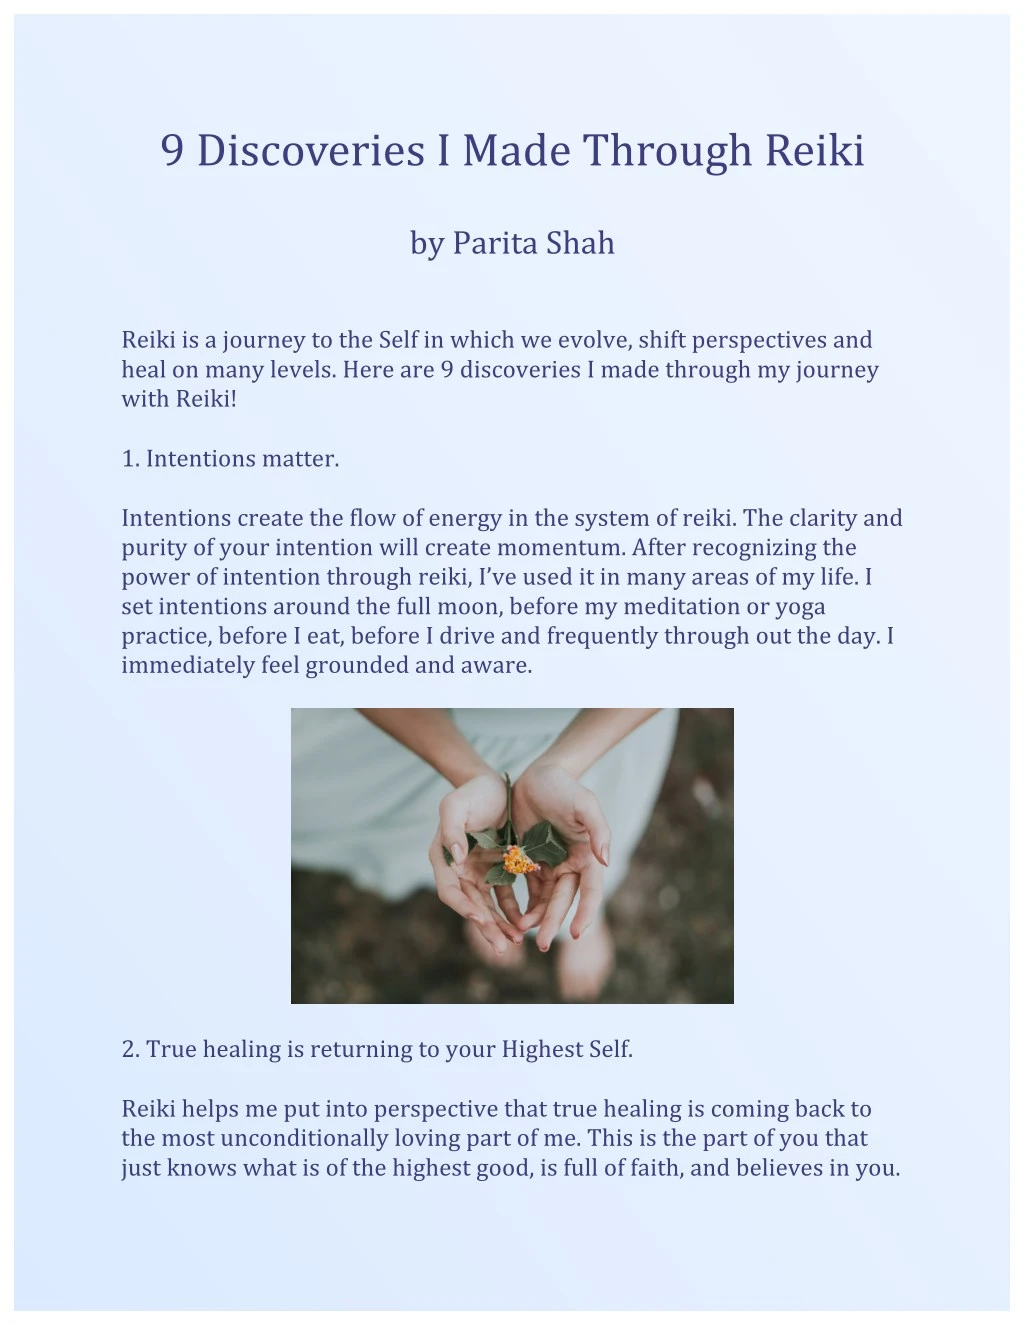 9 discoveries i made through reiki by parita shah